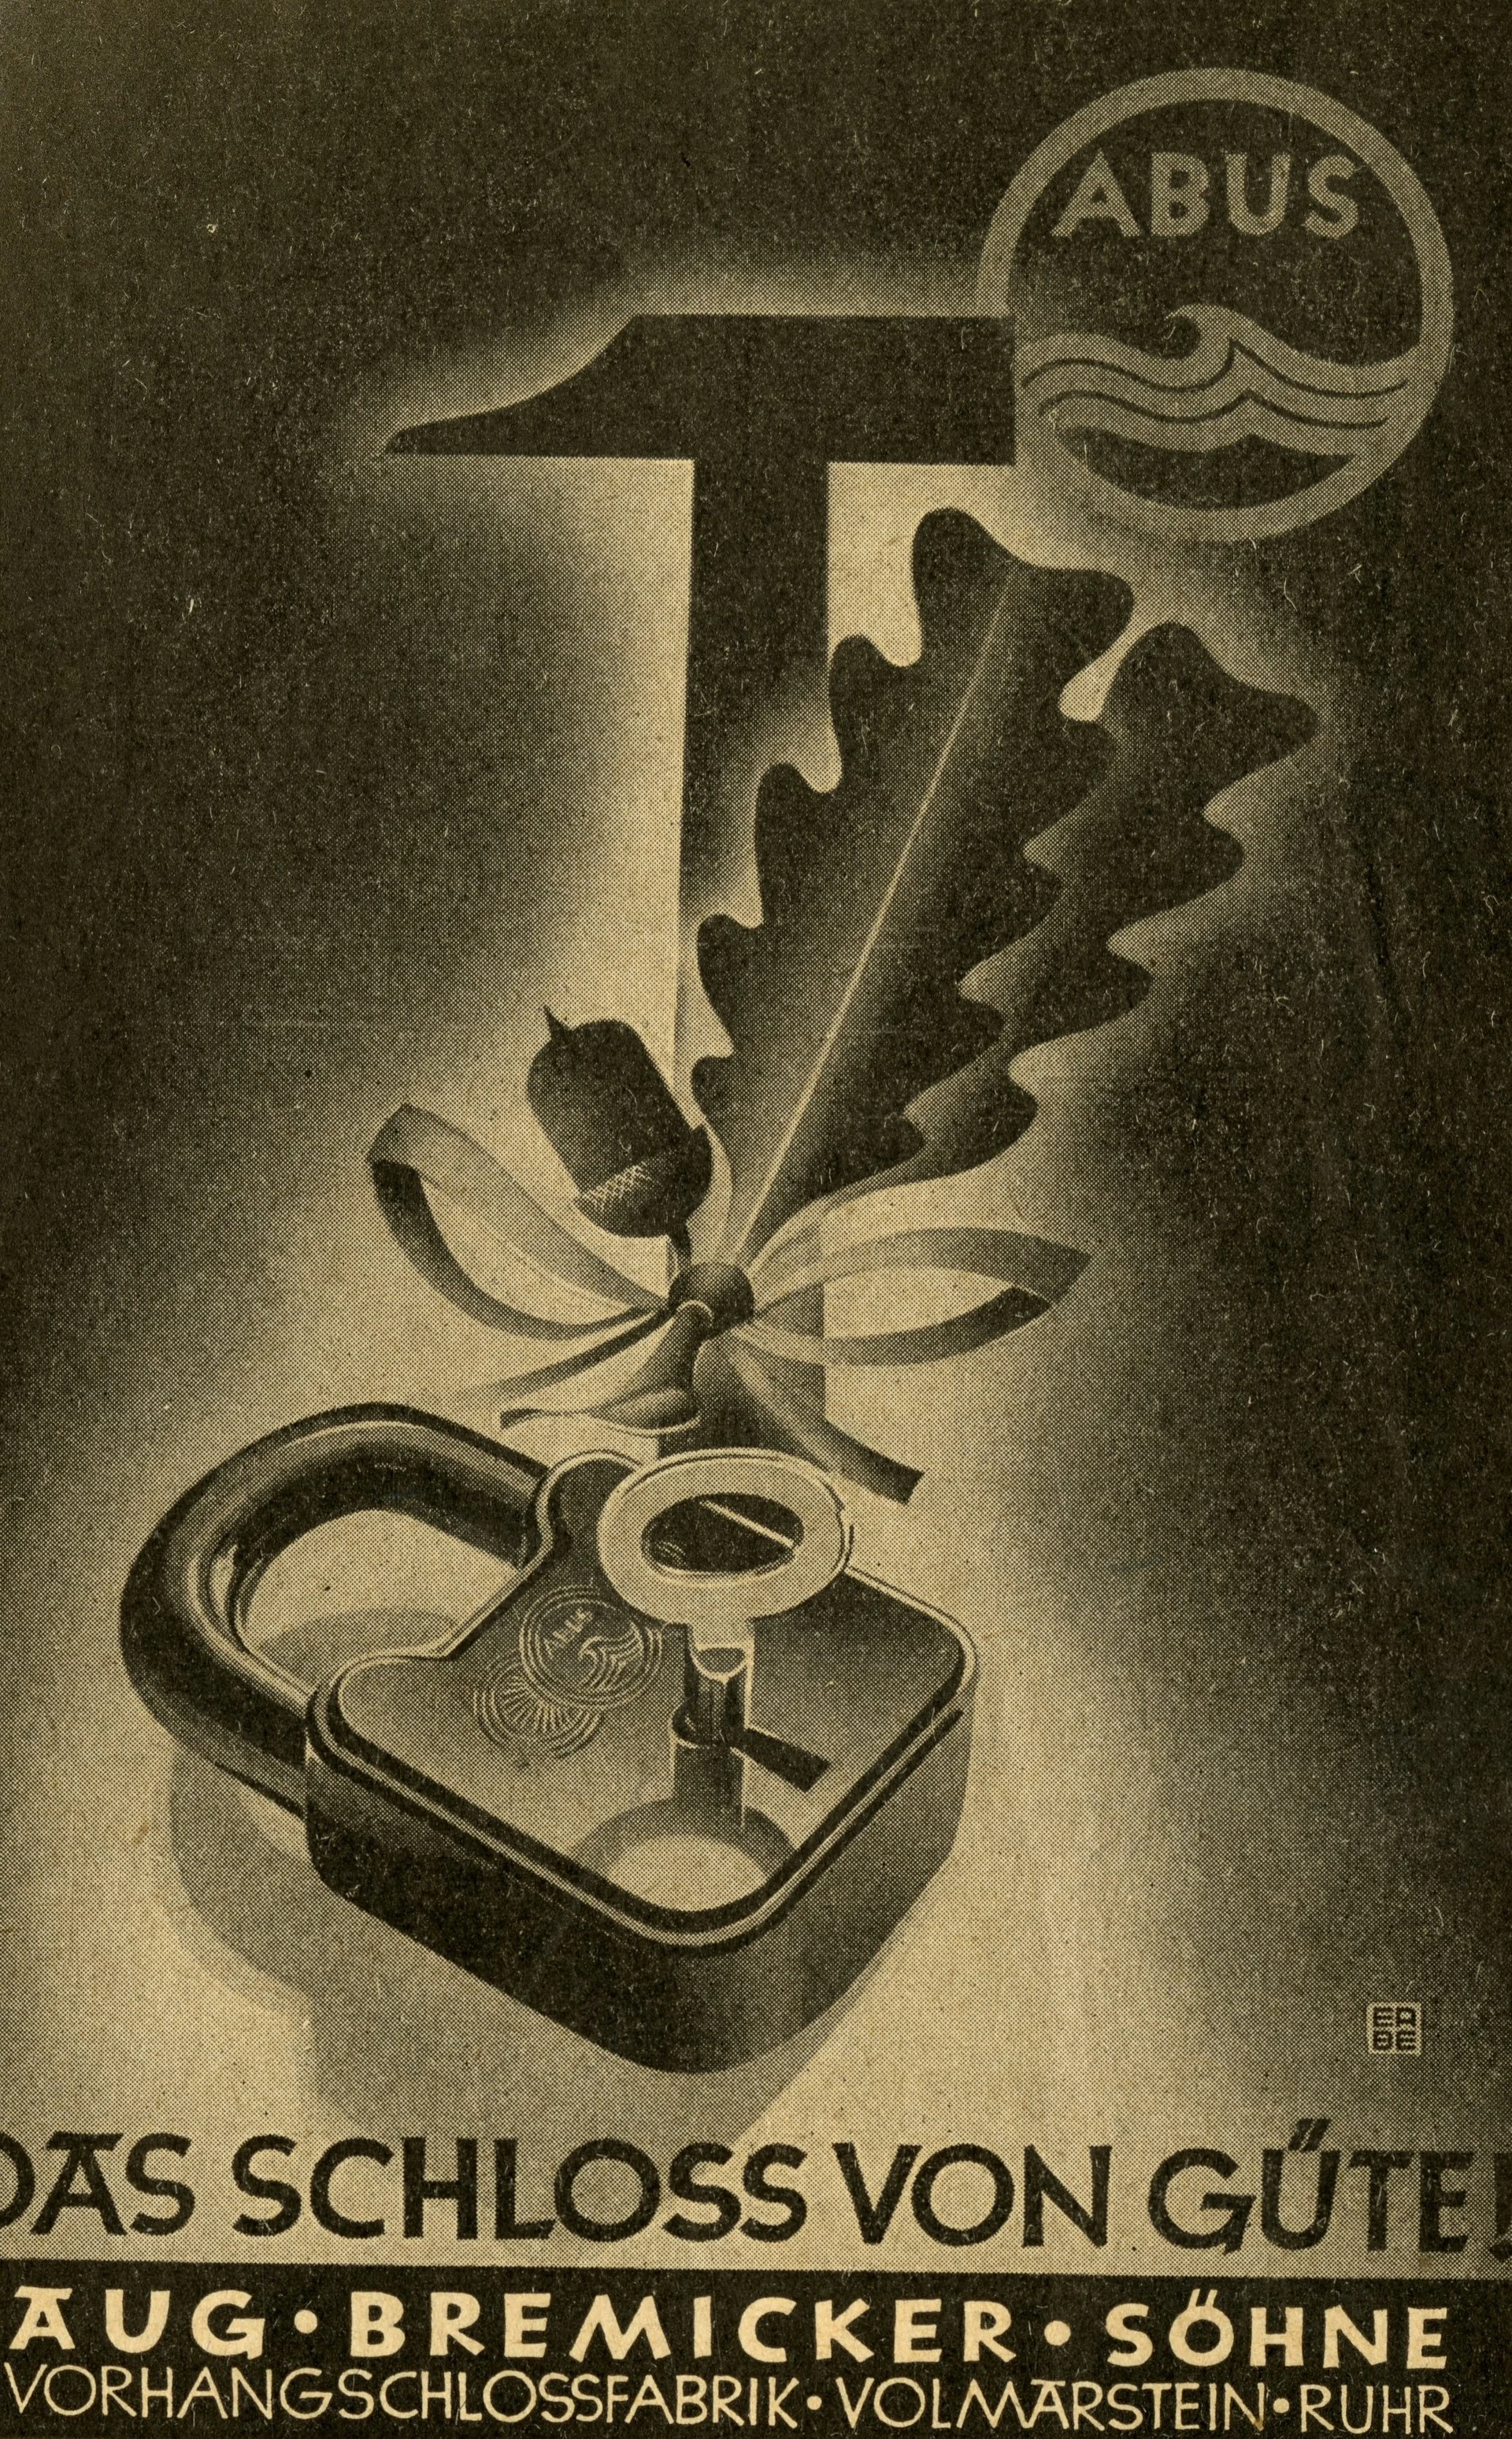 Cartel de color oscuro que representa un candado junto con una rama de roble y un martillo, con la inscripción "¡El candado de calidad!" © ABUS